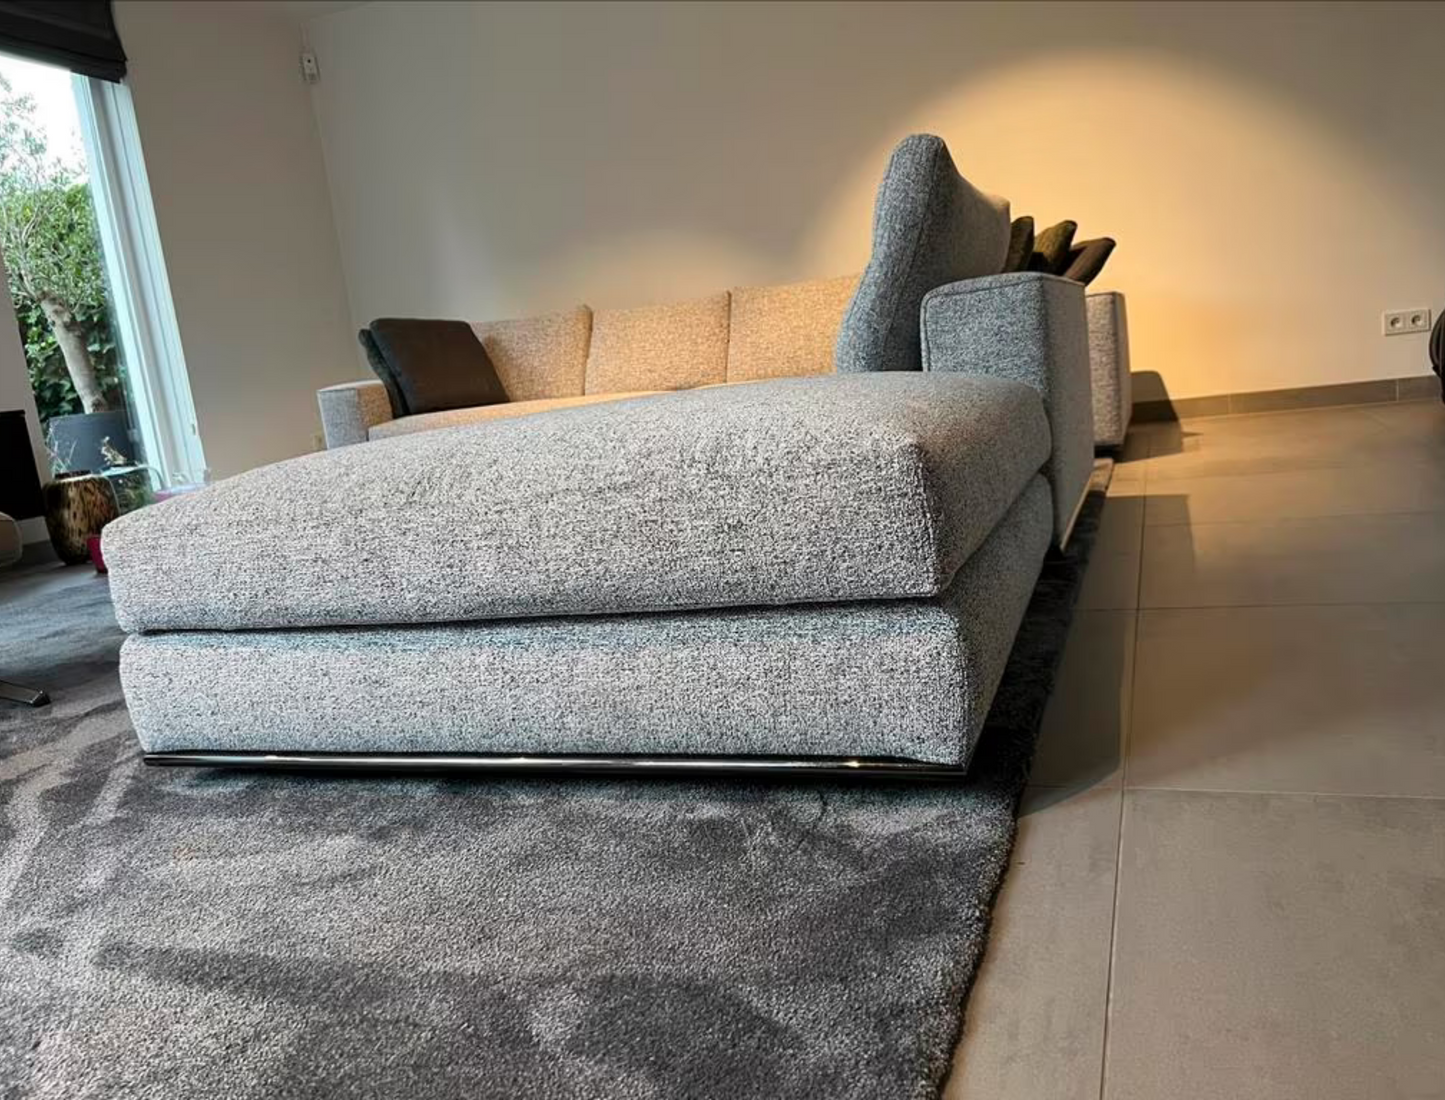 Minotti Hamilton Modular corner sofa consisting of 4 elements